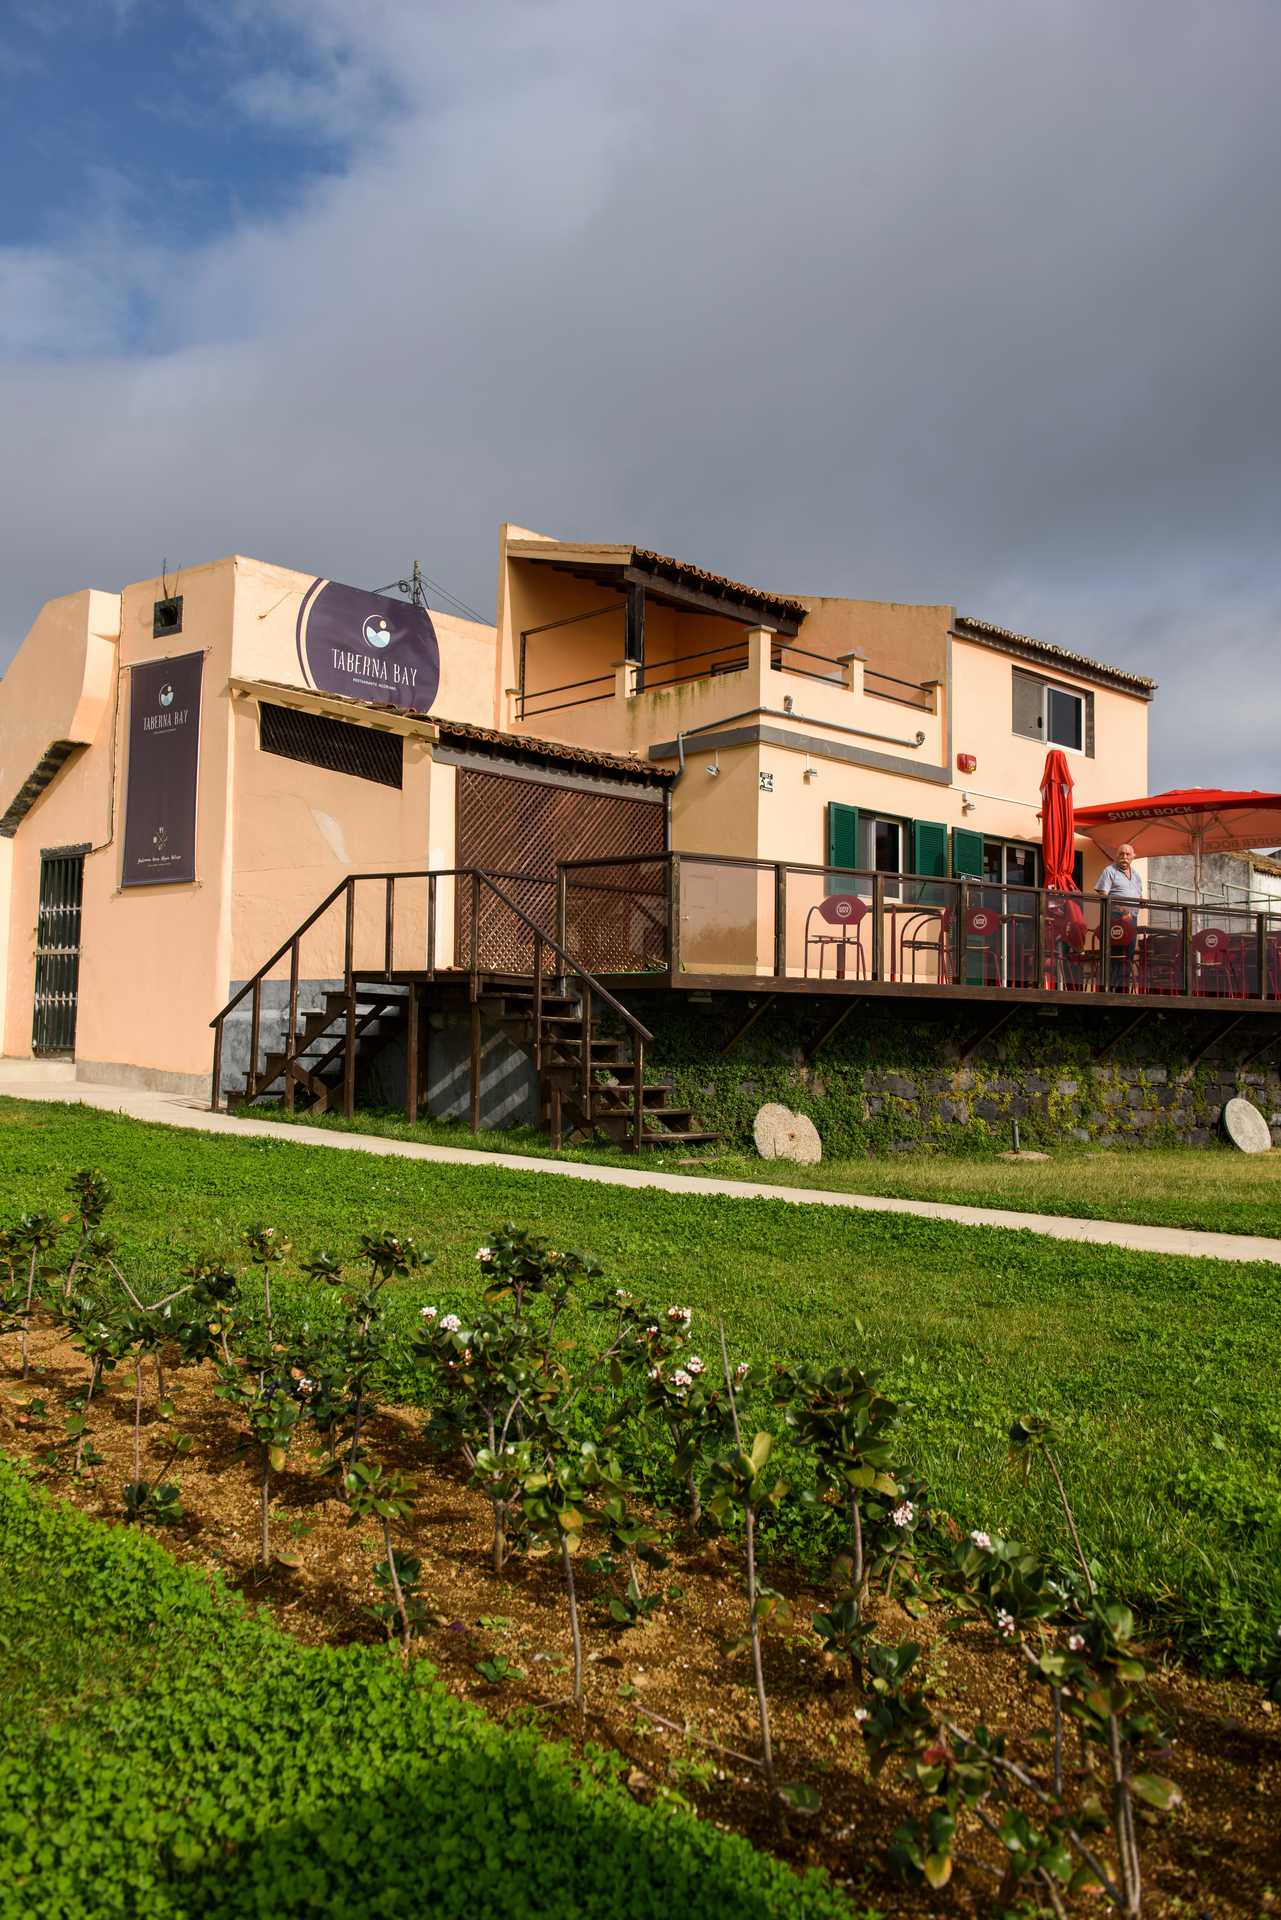 Roteiro Fim de-semana em São Miguel nos Açores – Restaurante Taberna Bay